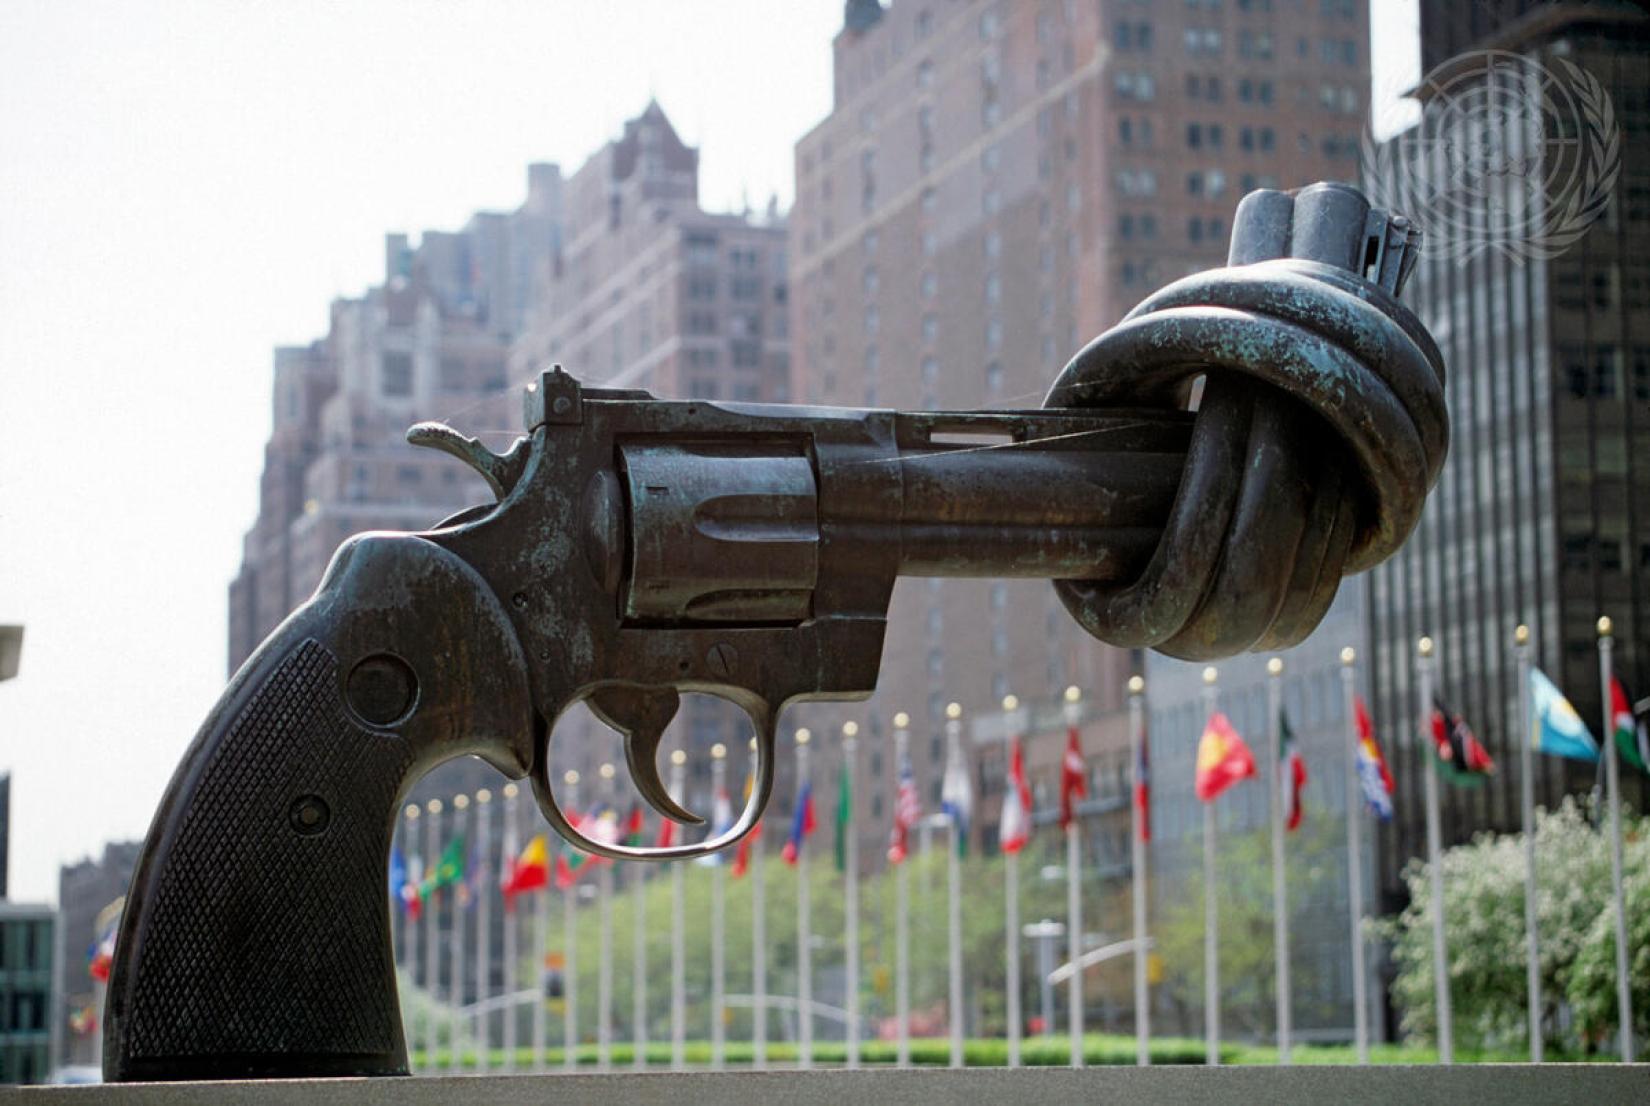 Escultura "Não-Violência" do artista sueco Carl Fredrik Reuterswärd, em exposição desde 1988 na Praça de Visitantes da ONU. A famosa escultura, símbolo universal da paz, foi presenteada por Luxemburgo às Nações Unidas.